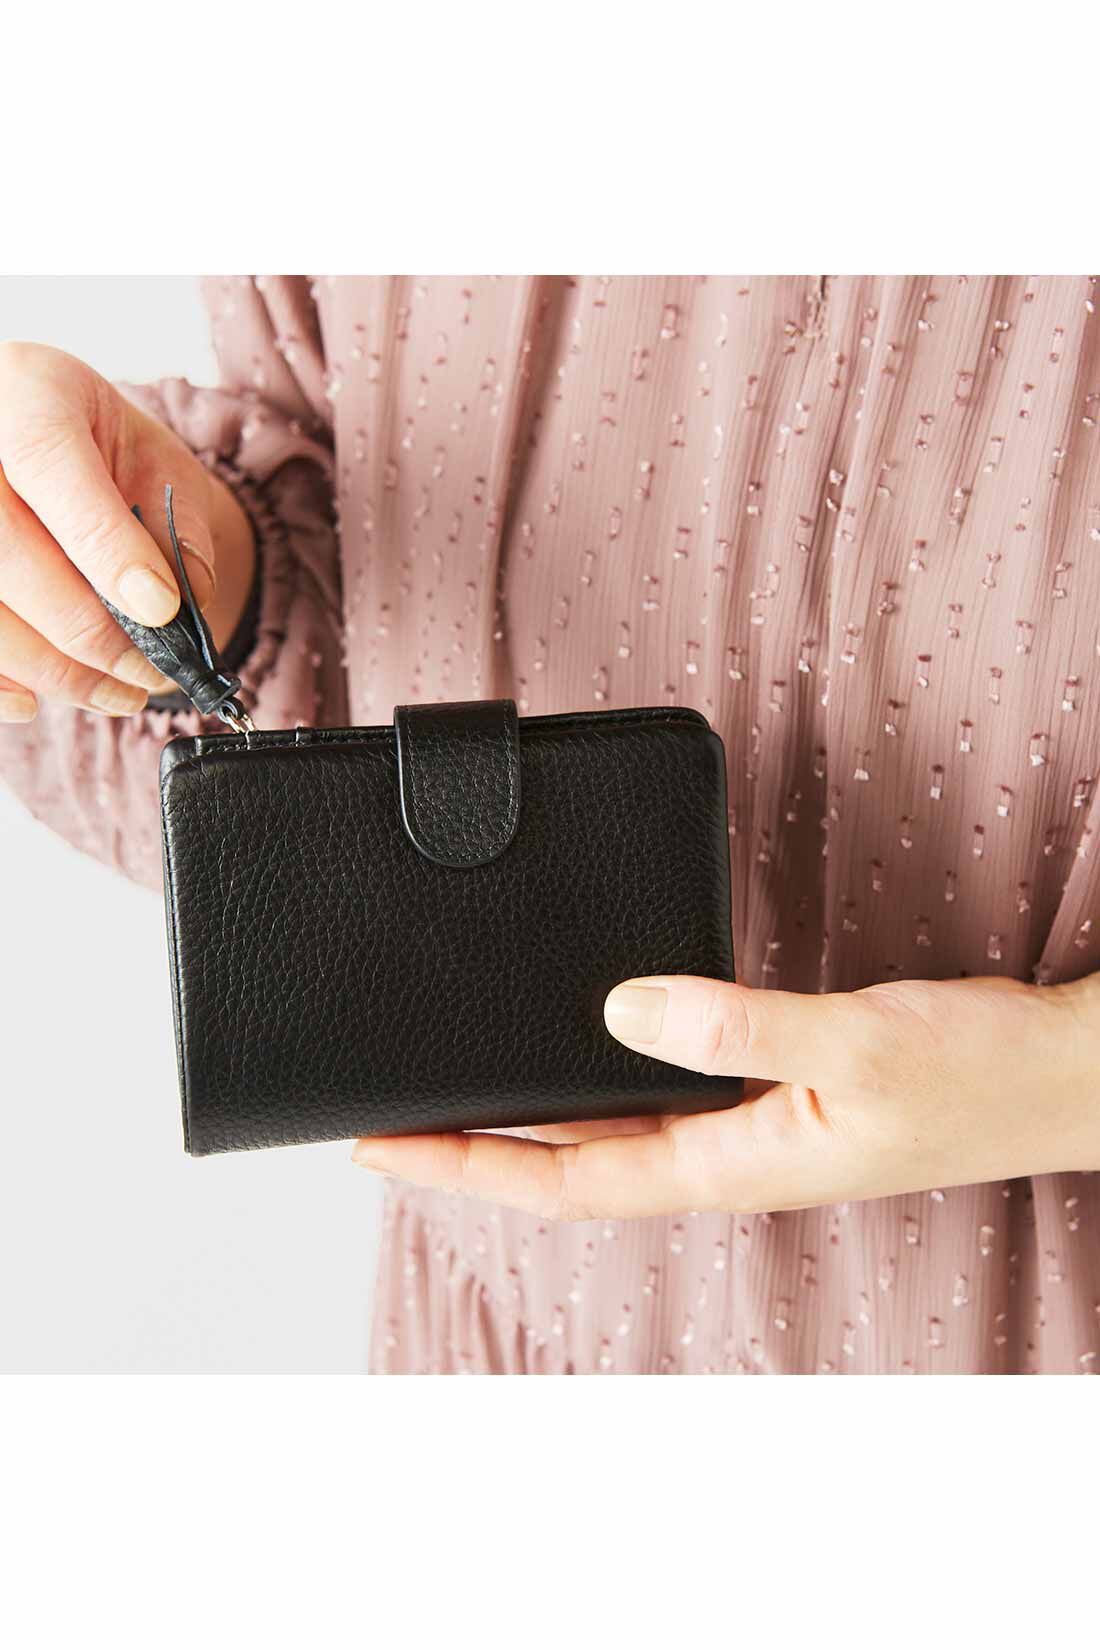 IEDIT|IEDIT[イディット]　くったり本革素材できれいめ二つ折り財布〈ブラック〉|手のひらに収まるコンパクトなサイズ感。